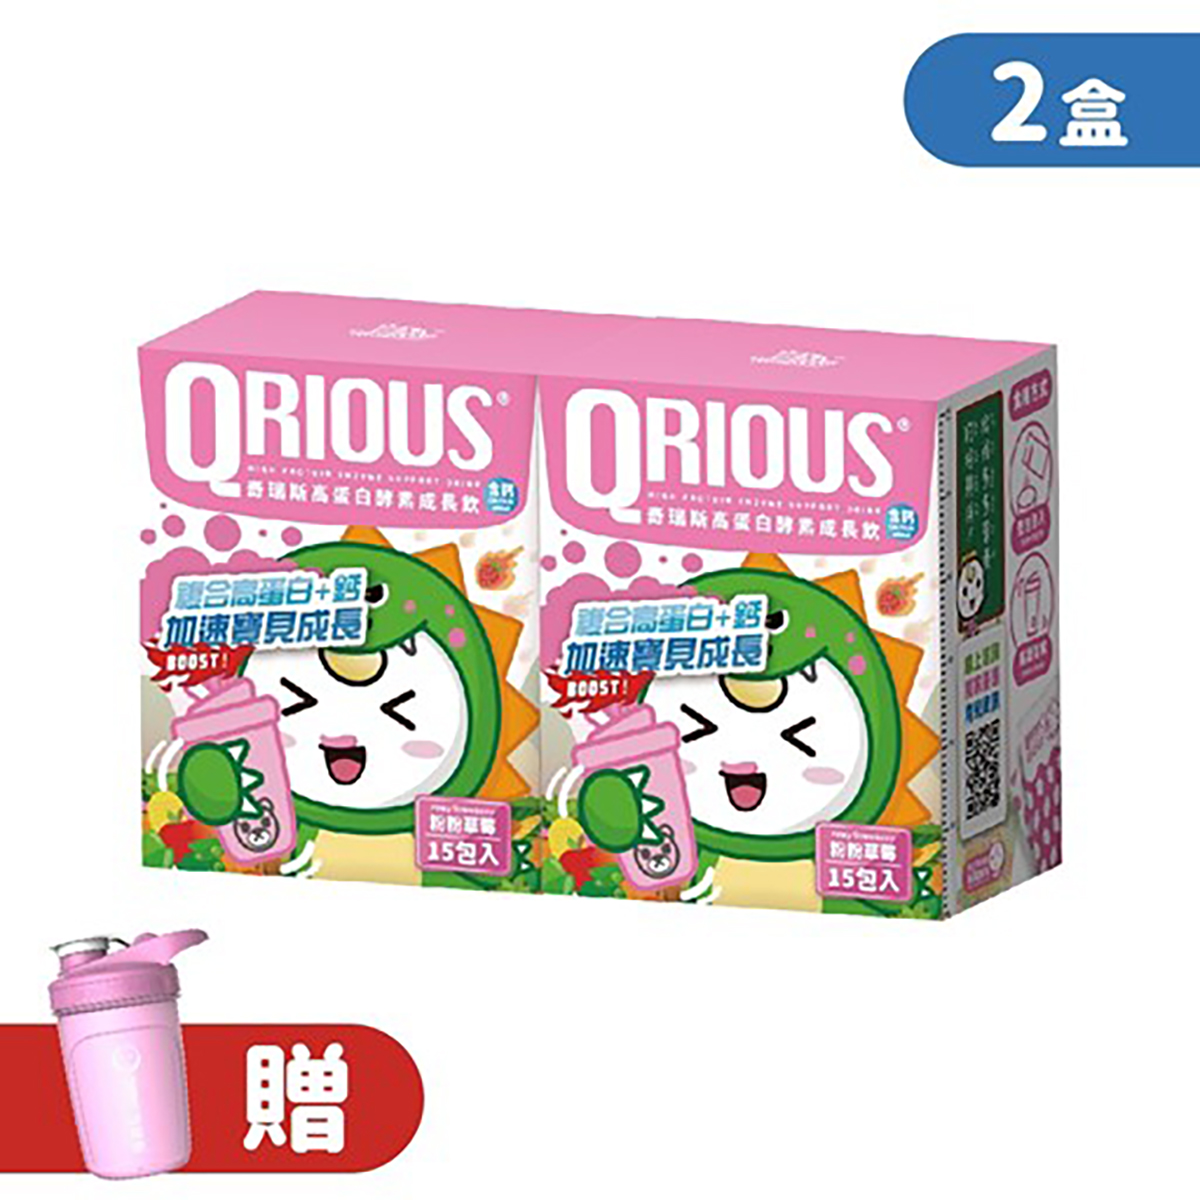 【生長發育必備】QRIOUS®奇瑞斯複方蛋白+鈣成長飲-粉粉草莓(2盒)贈小Ｑ雪克杯(1入)